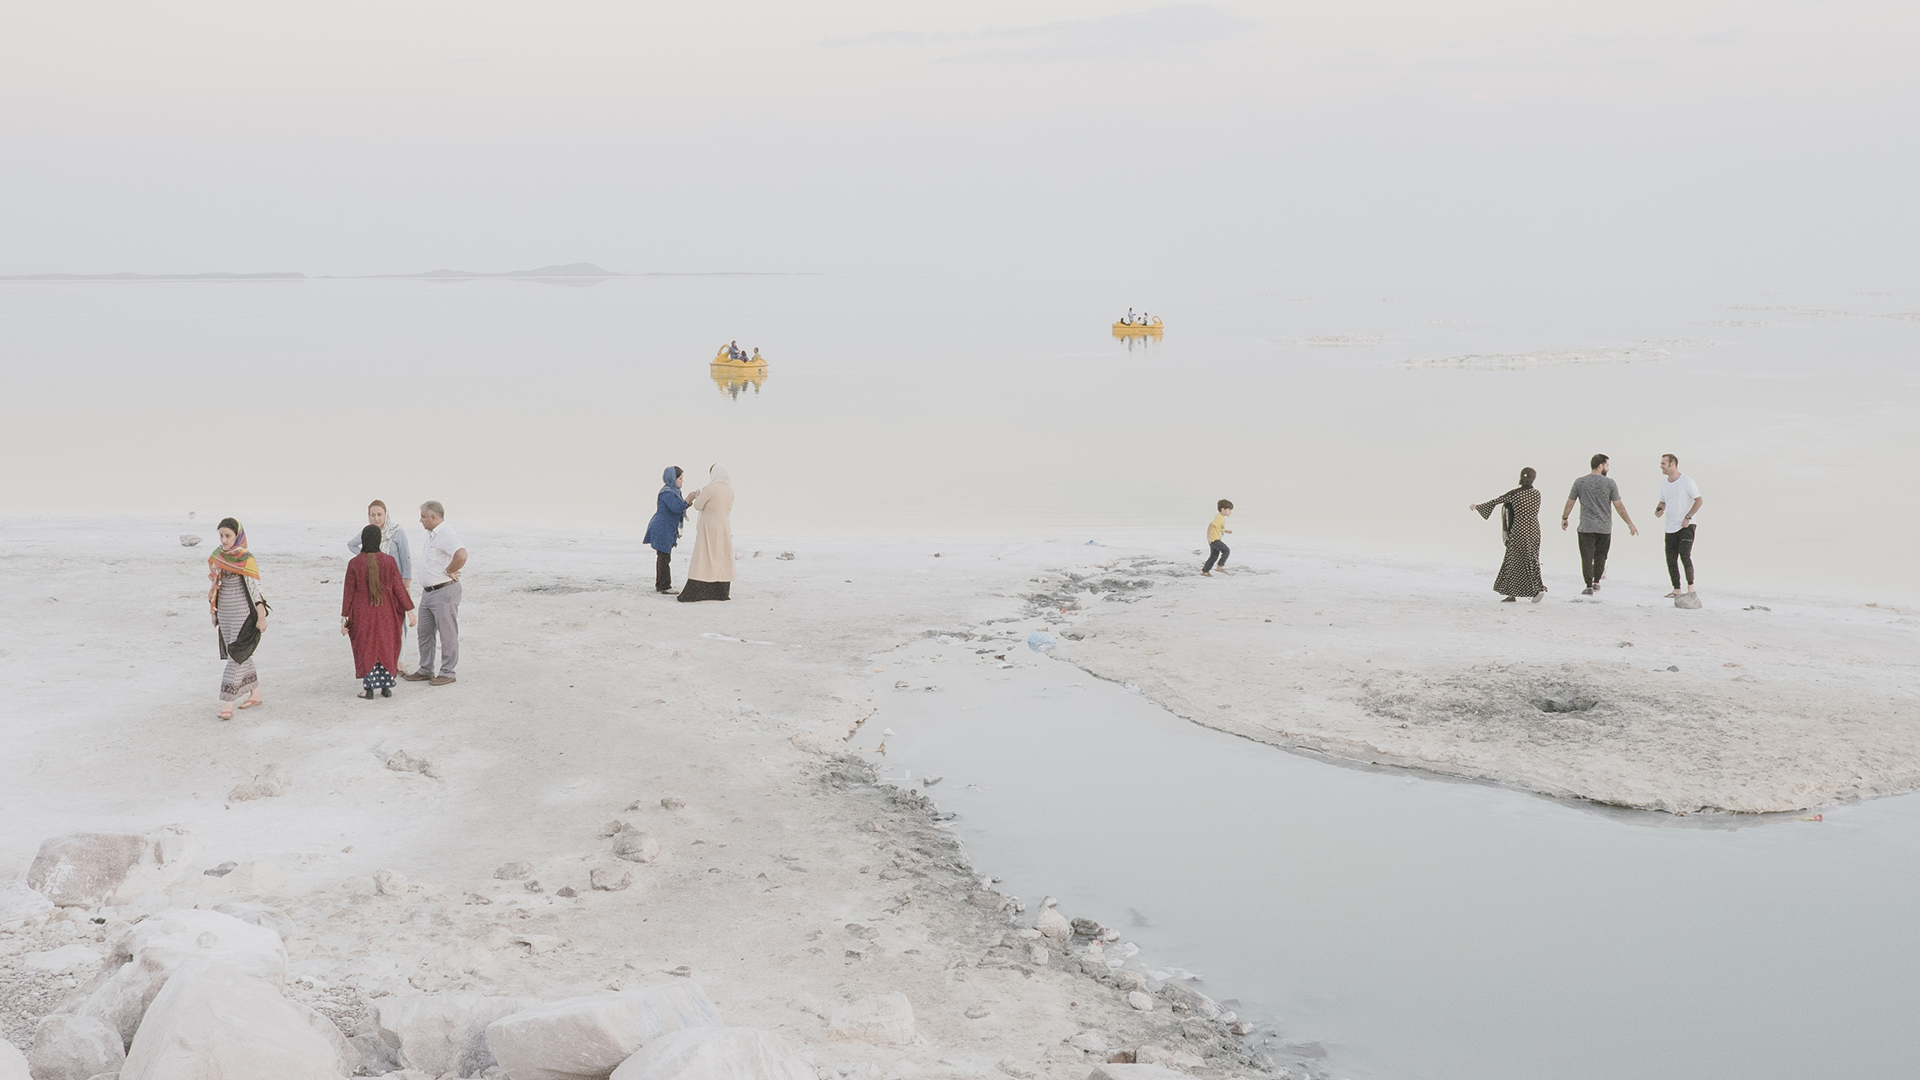 Prix Eugene Smith 2019 : un nouveau désert en Iran